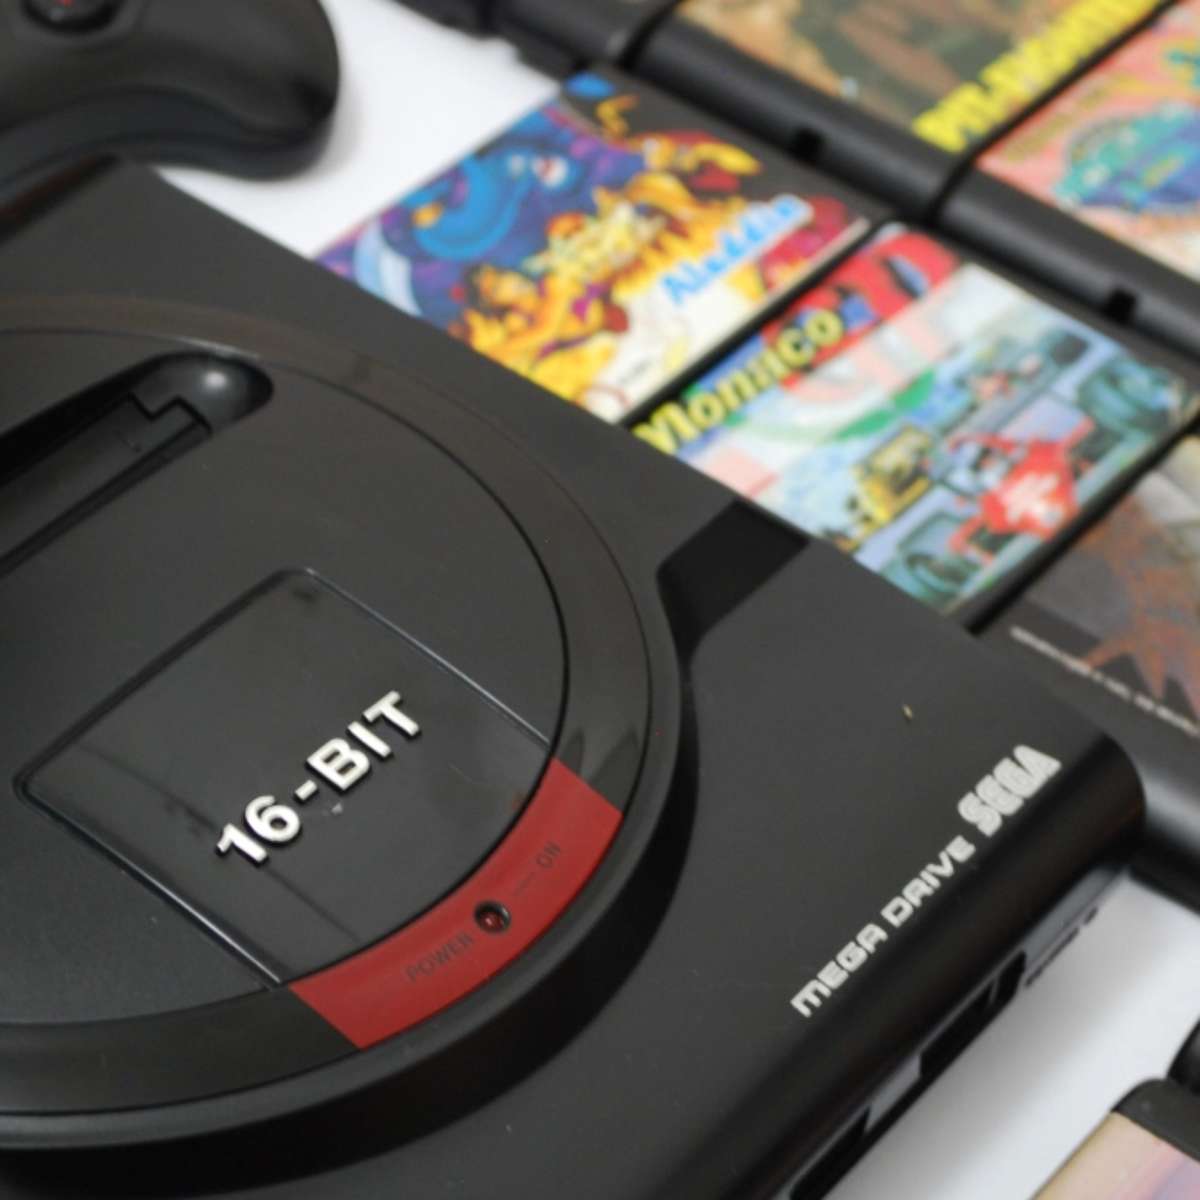 Mega Drive faz 30 anos, veja 10 curiosidades sobre ele - Olhar Digital